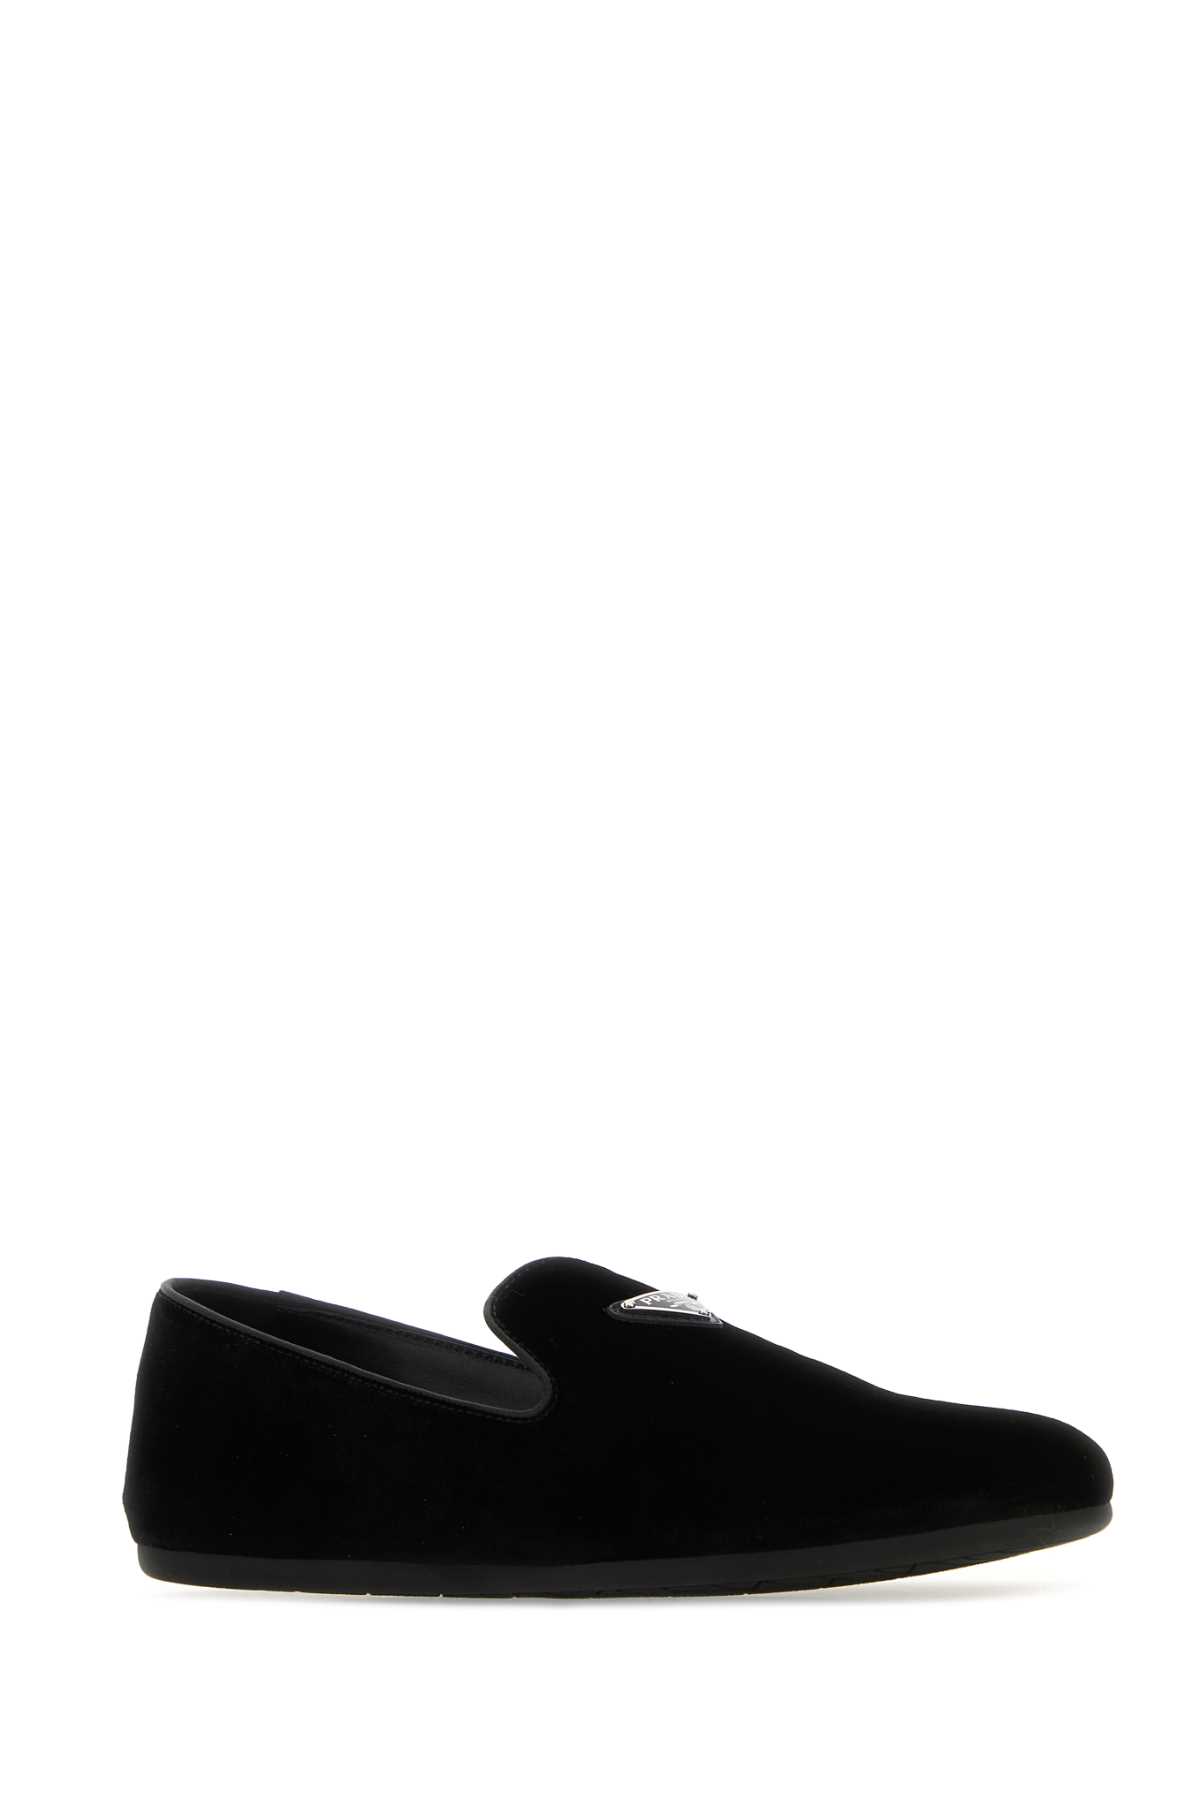 Prada Black Velvet Loafers In Nero